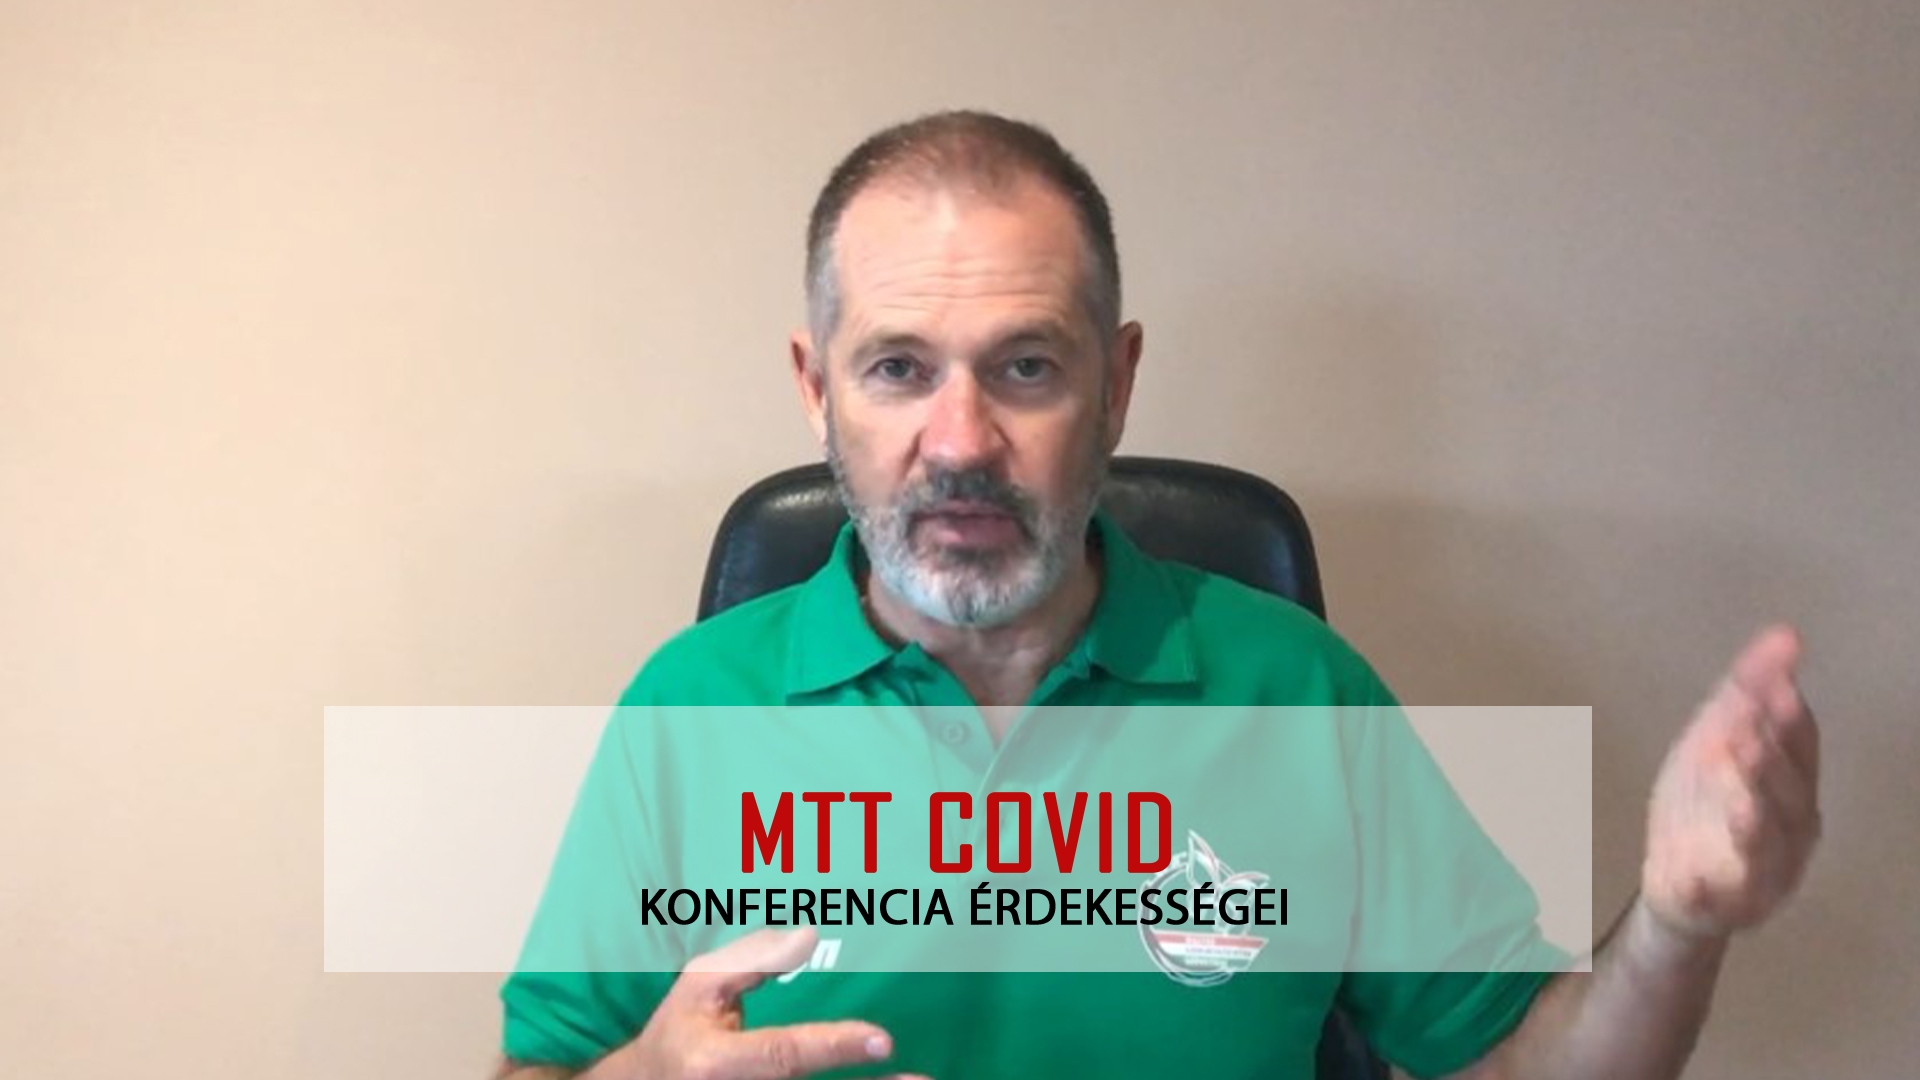 MTT COVID konferencia érdekességei